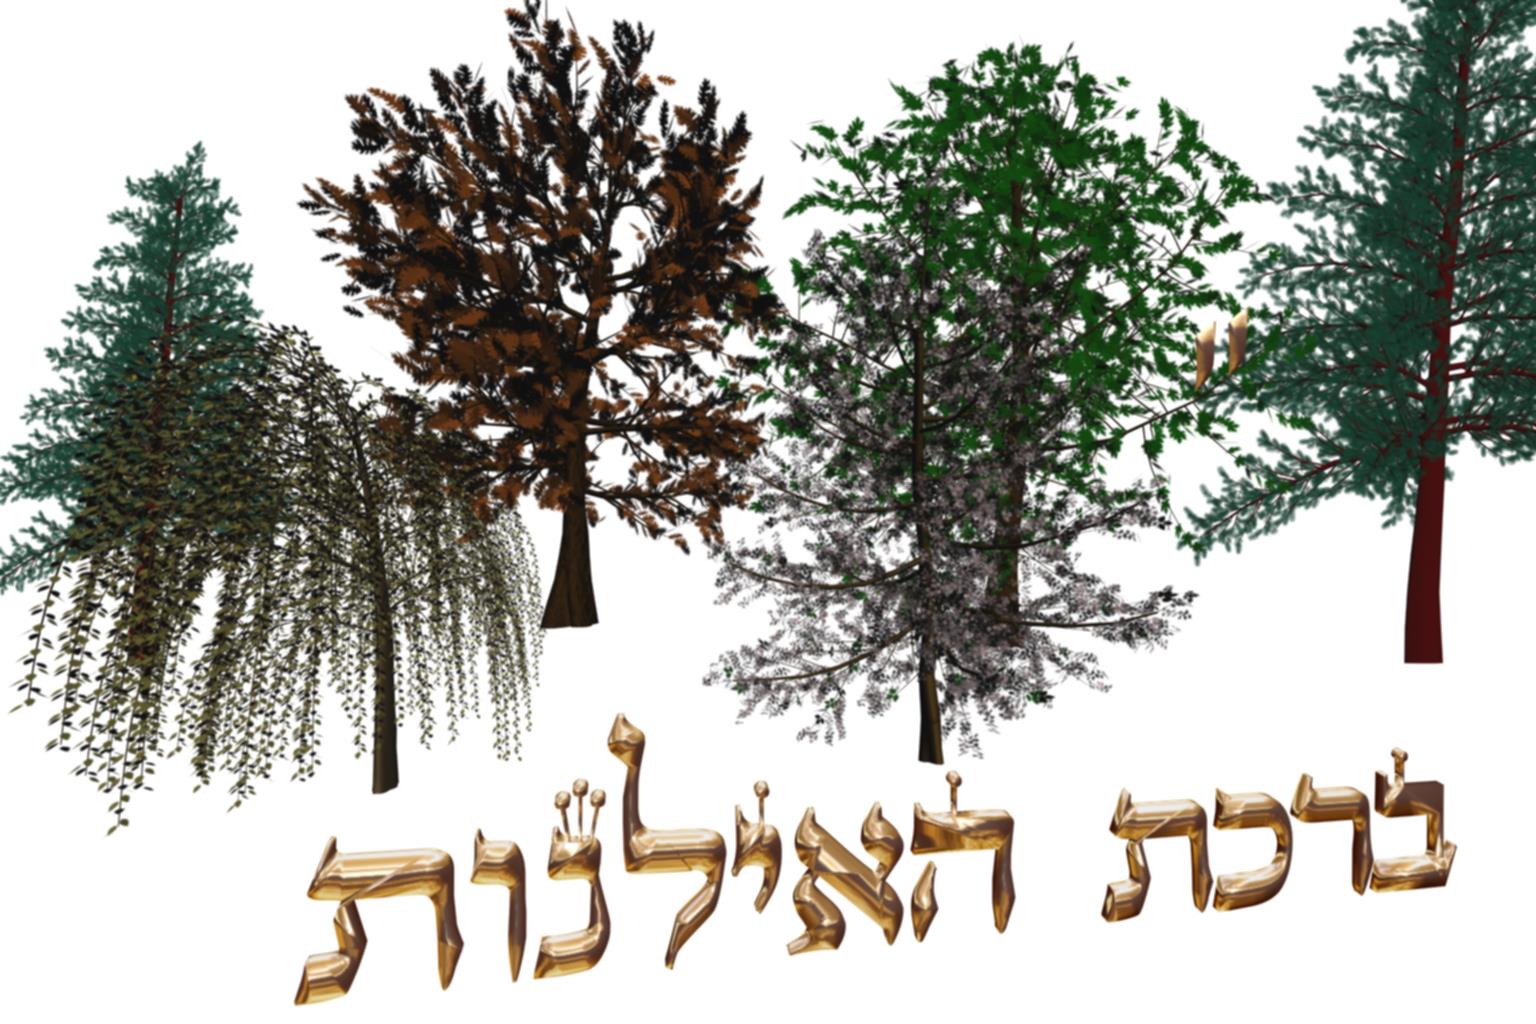 II Lois Concernant la bénédiction sur les arbres birkat hailanot - Torath Hamoadim - Préparatifs de pessah